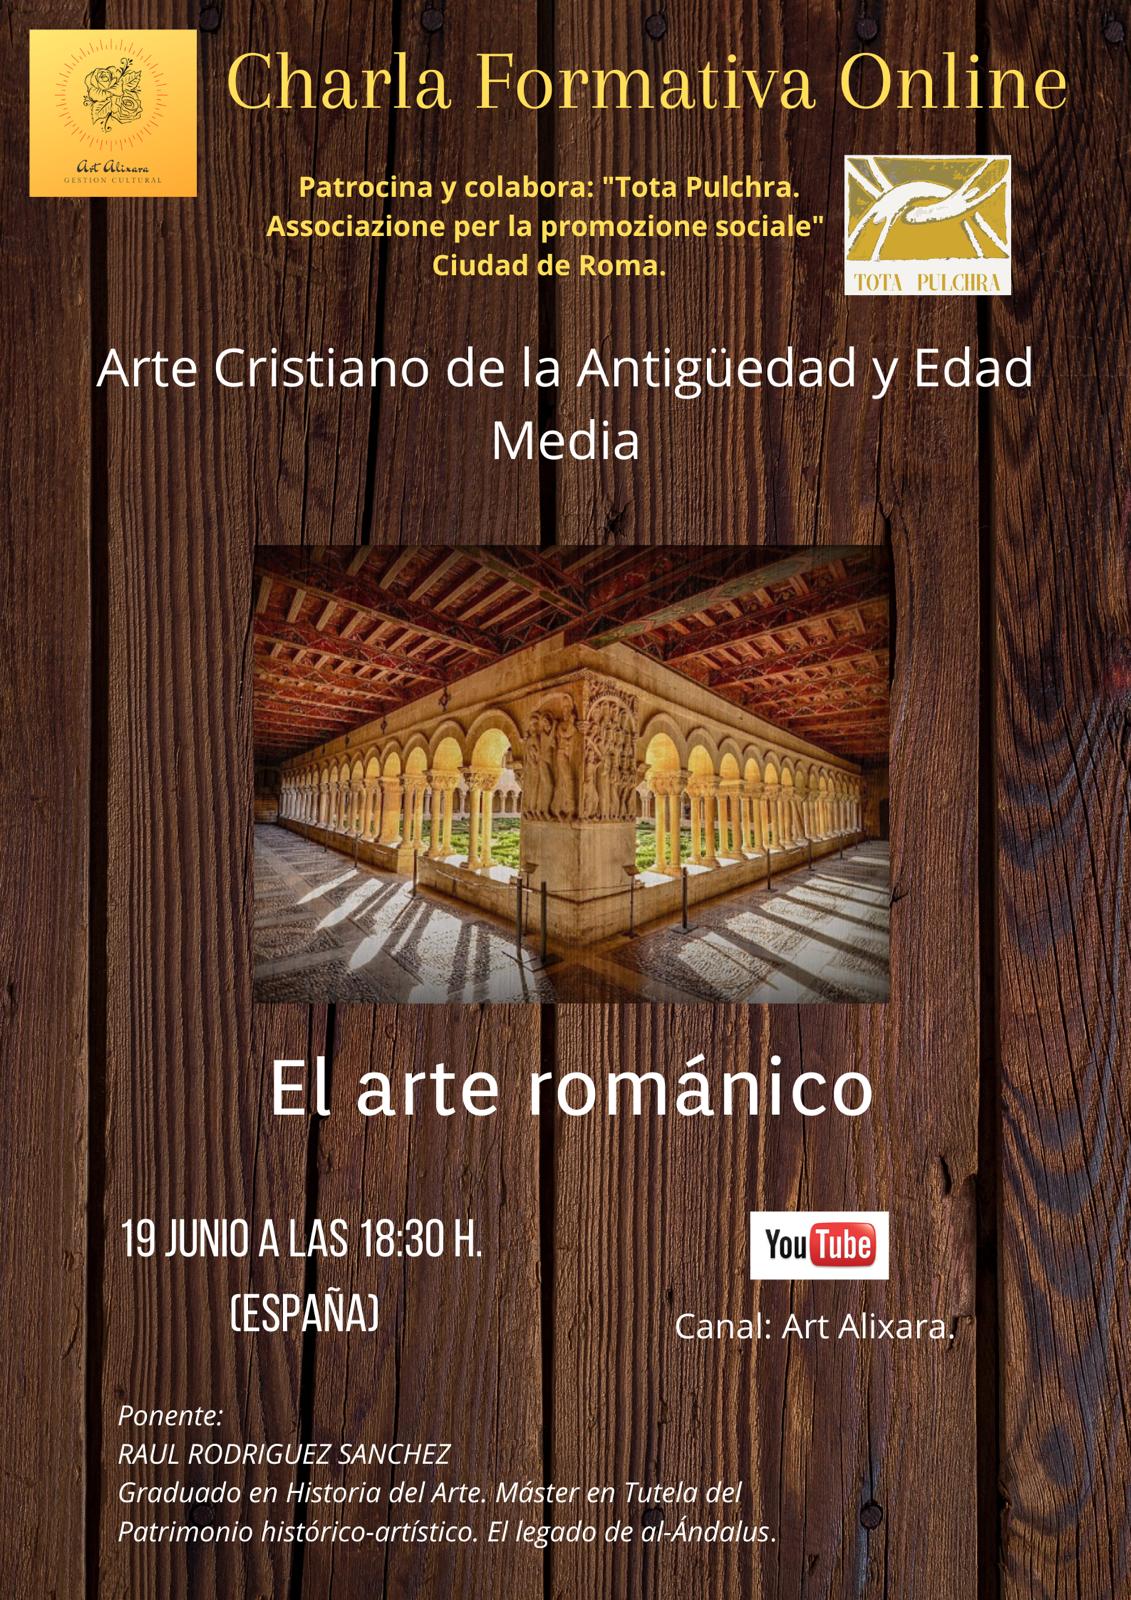 Charla Formativa “Arte Cristiano de la Antigüedad y Edad Media” - El arte románico